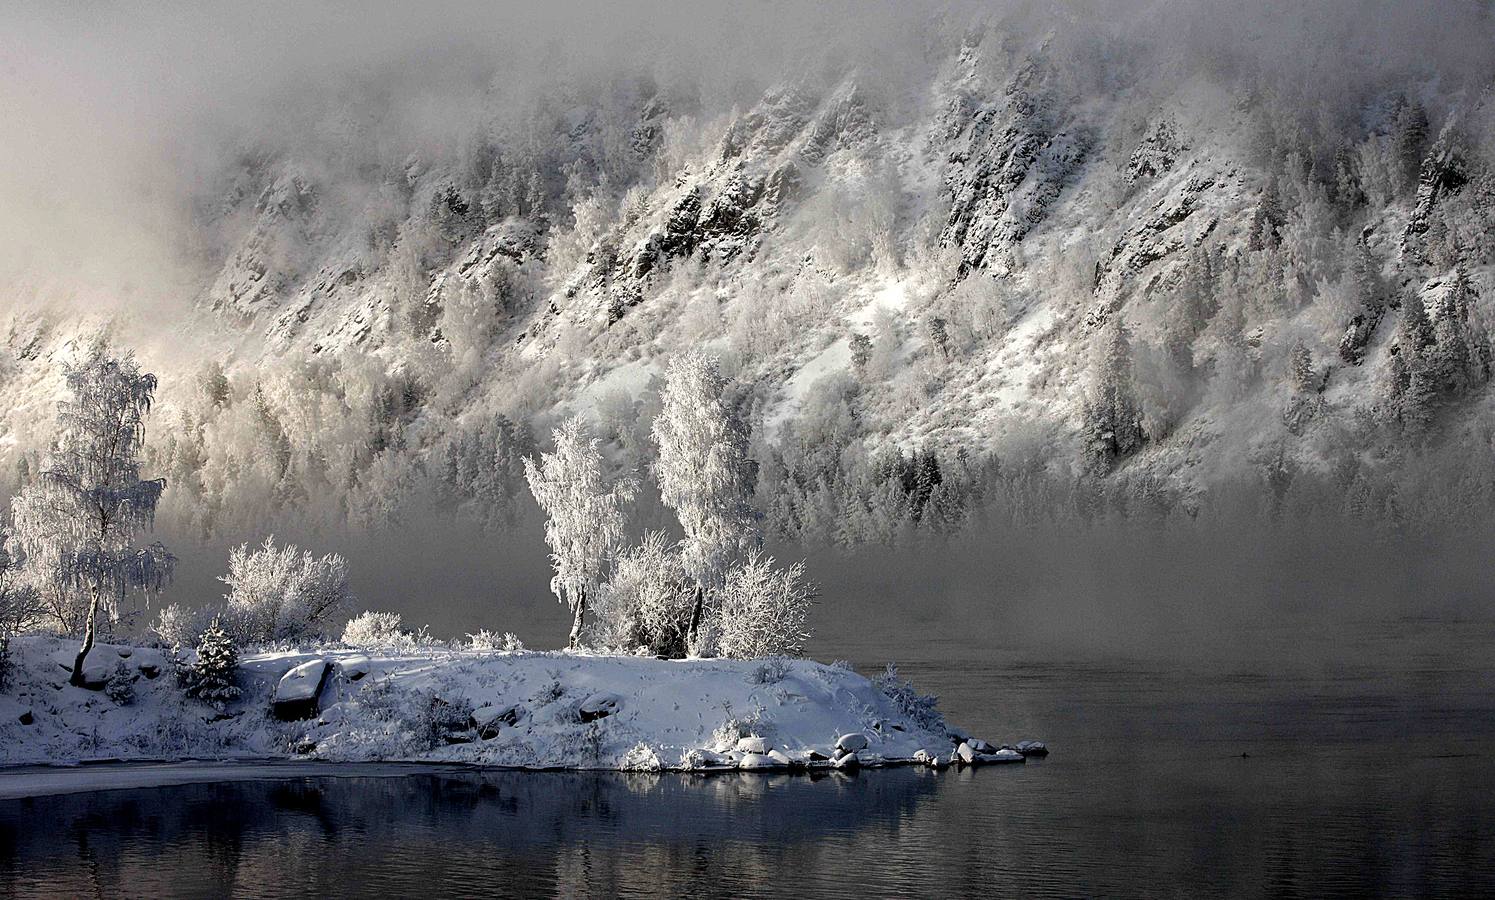 El Yeniséi es el principal río de Siberia. Su extensión de 4.093 kilómetros hasta desembocar en el Ártico lo convierte en uno de los más largos del mundo. Aunque hay numerosas leyendas sobre el origen de la palabra Yeniséi, la mayoría se inclina por «agua grande» o «río madre.» Sea como fuere, las temperaturas extraordinariamente bajas de las regiones por las que discurre le proporcionan una belleza inusual. Las fotografías están tomadas en la región de Karasnoyarsk, a unos 30 grados bajo cero.